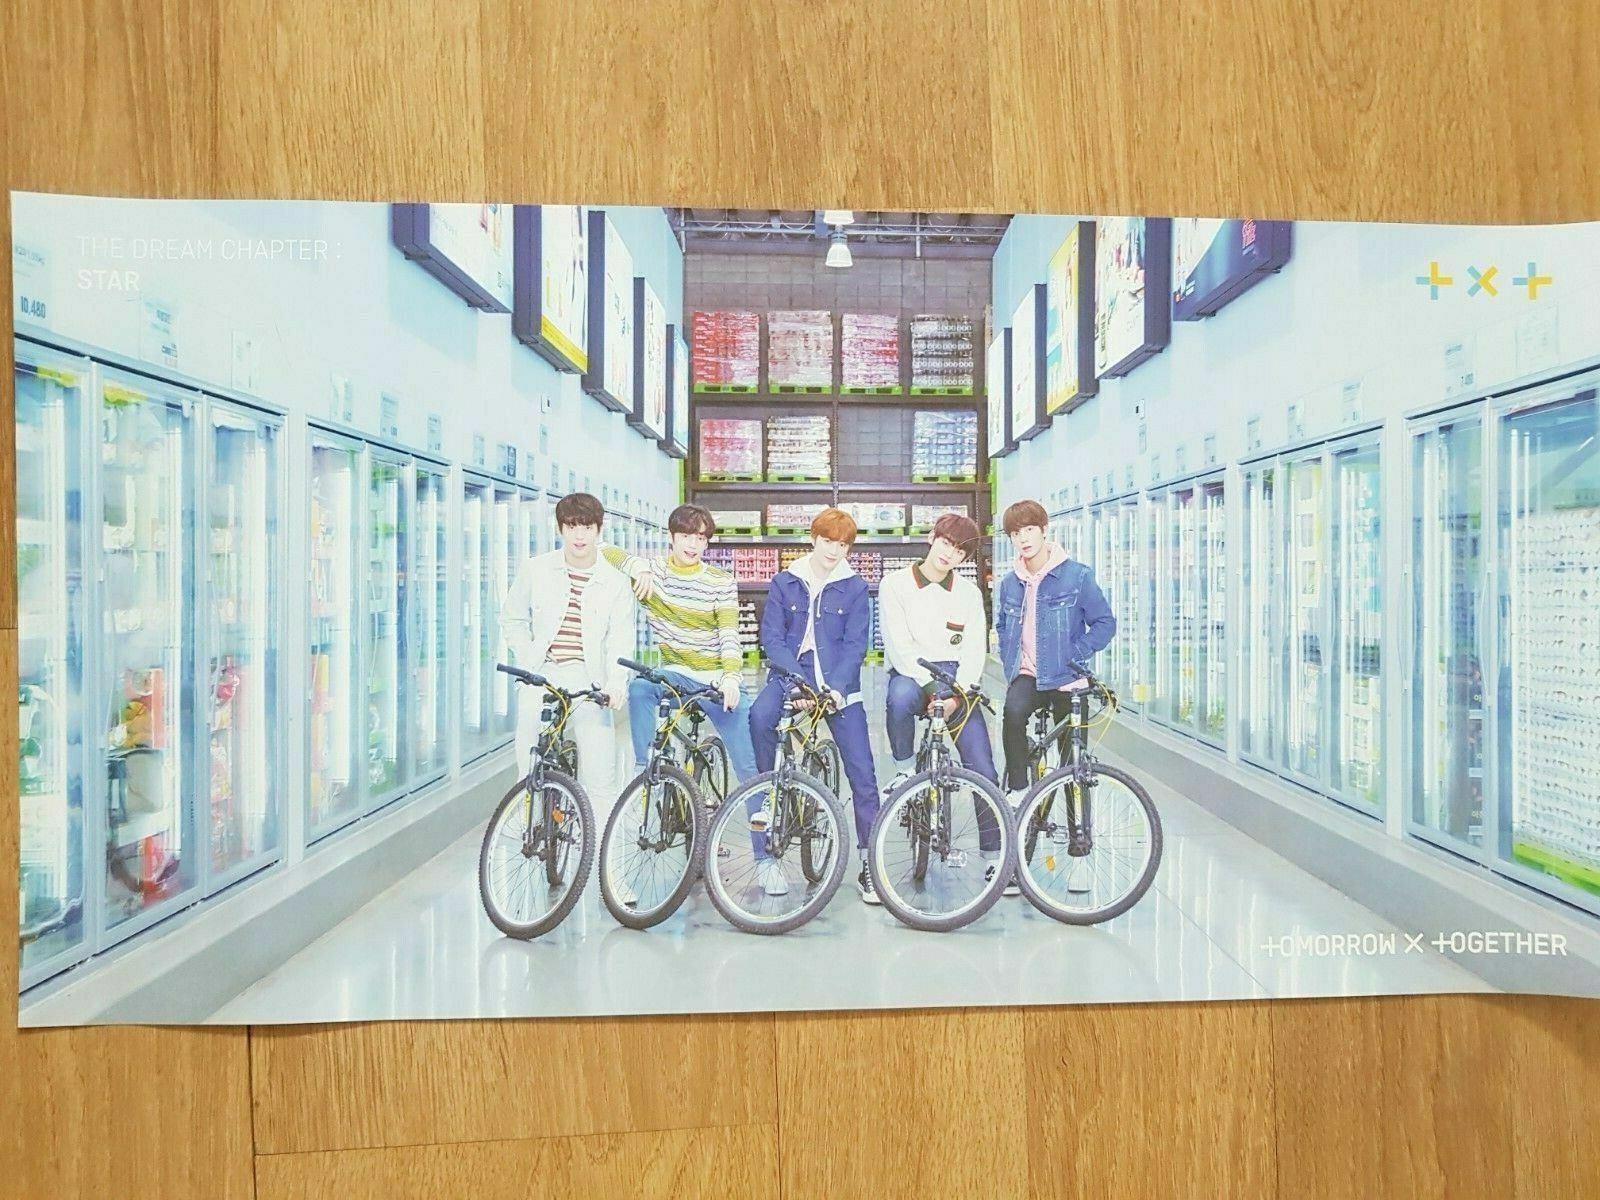 K-pop TXT 1st álbum "El sueño capítulo: Star" cartel oficial/detrás de la escena hermano